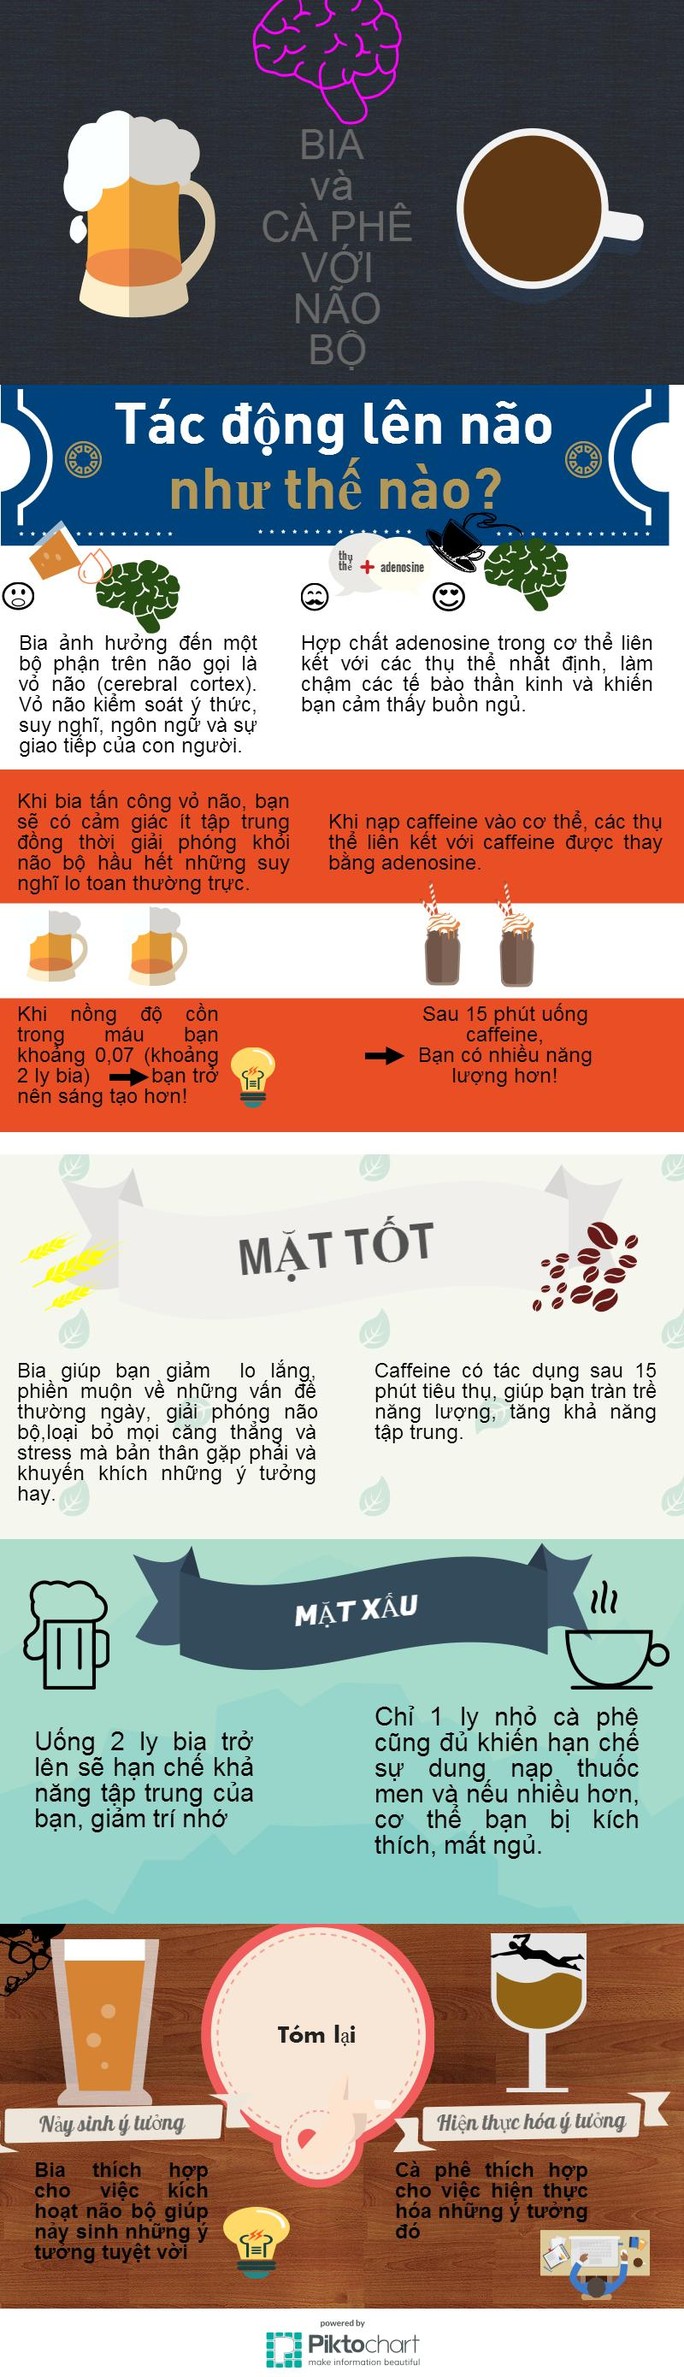 [Infographic] Ảnh hưởng của bia và cà phê lên não bộ